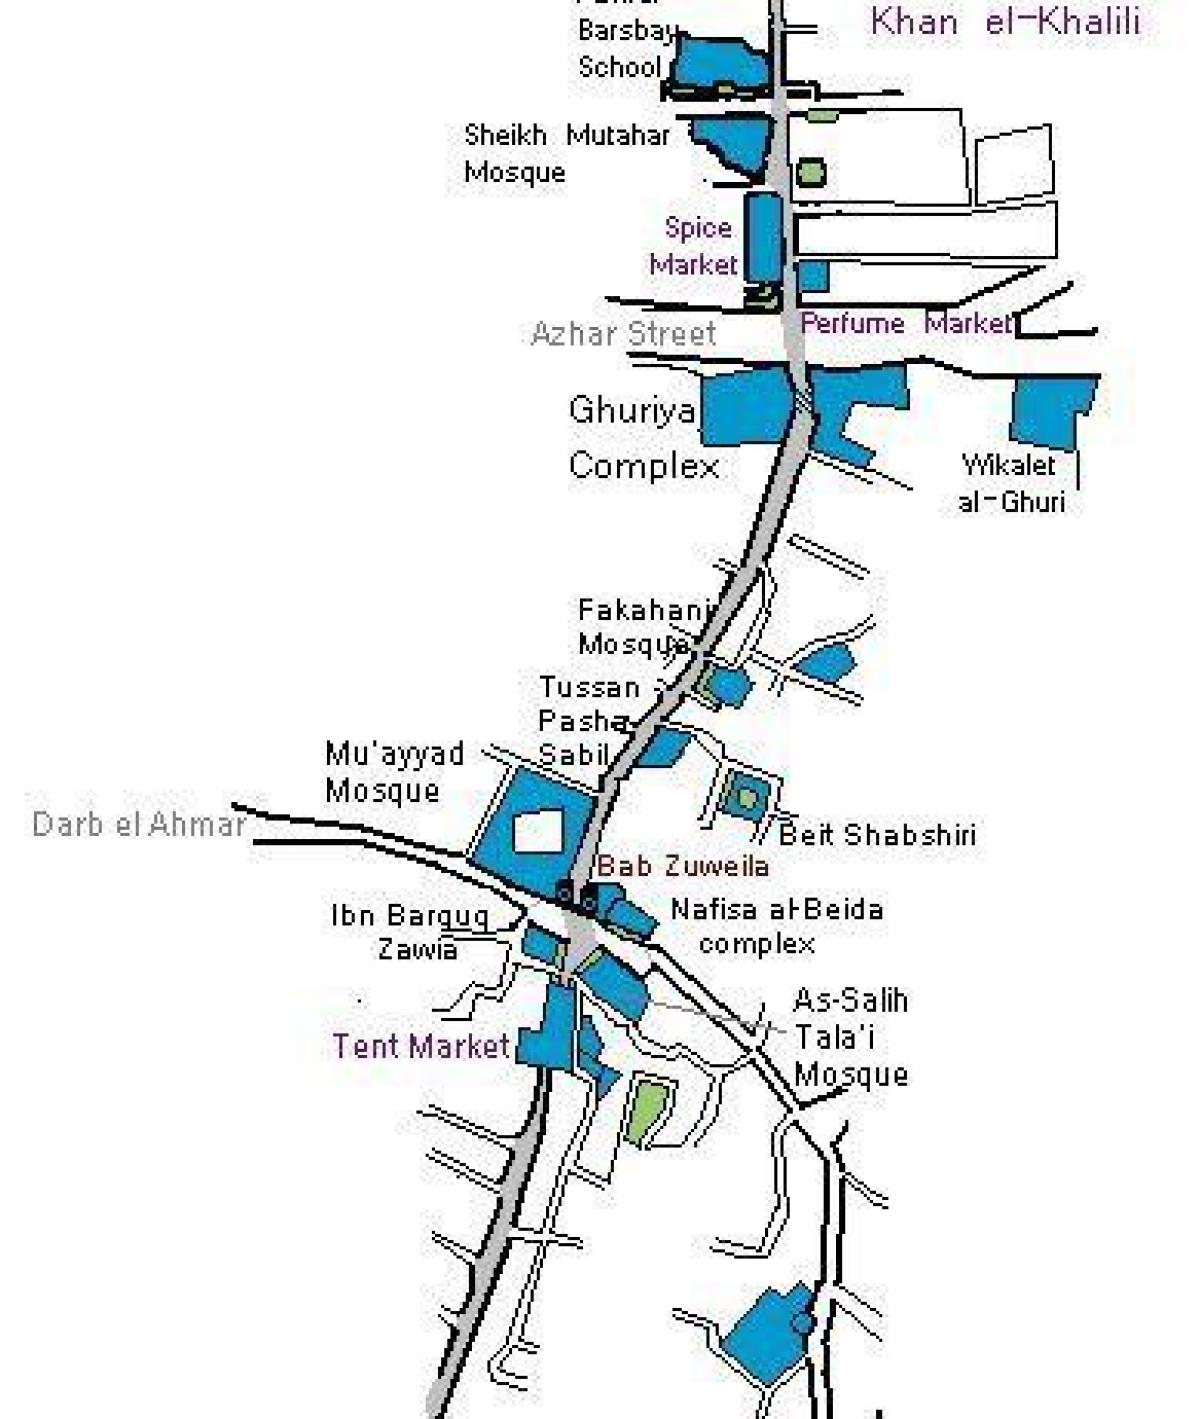 bazar de khan el khalili mapa